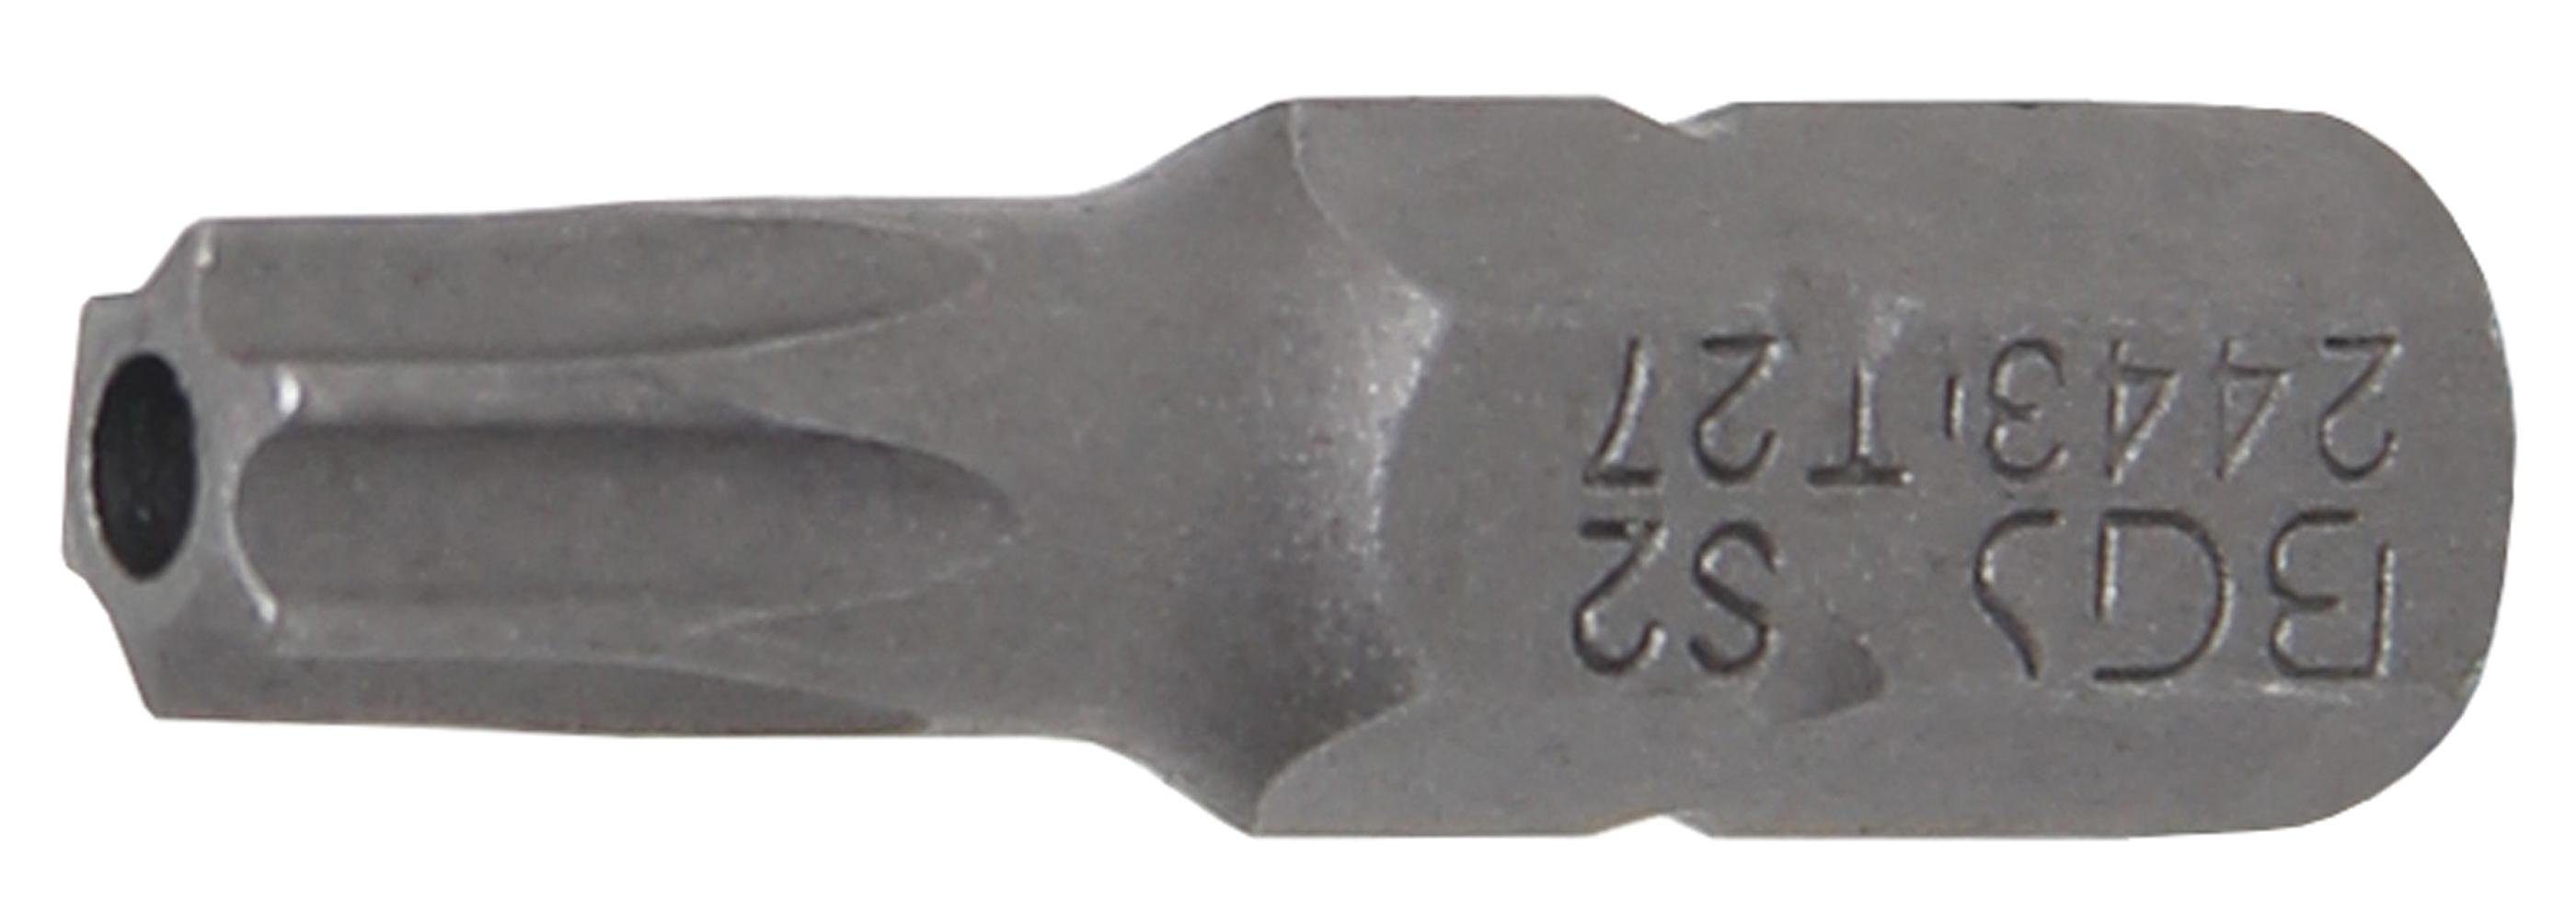 BGS technic Bit-Schraubendreher Bit, Länge 25 mm, Antrieb Außensechskant 6,3 mm (1/4), T-Profil (für Torx) mit Bohrung T27